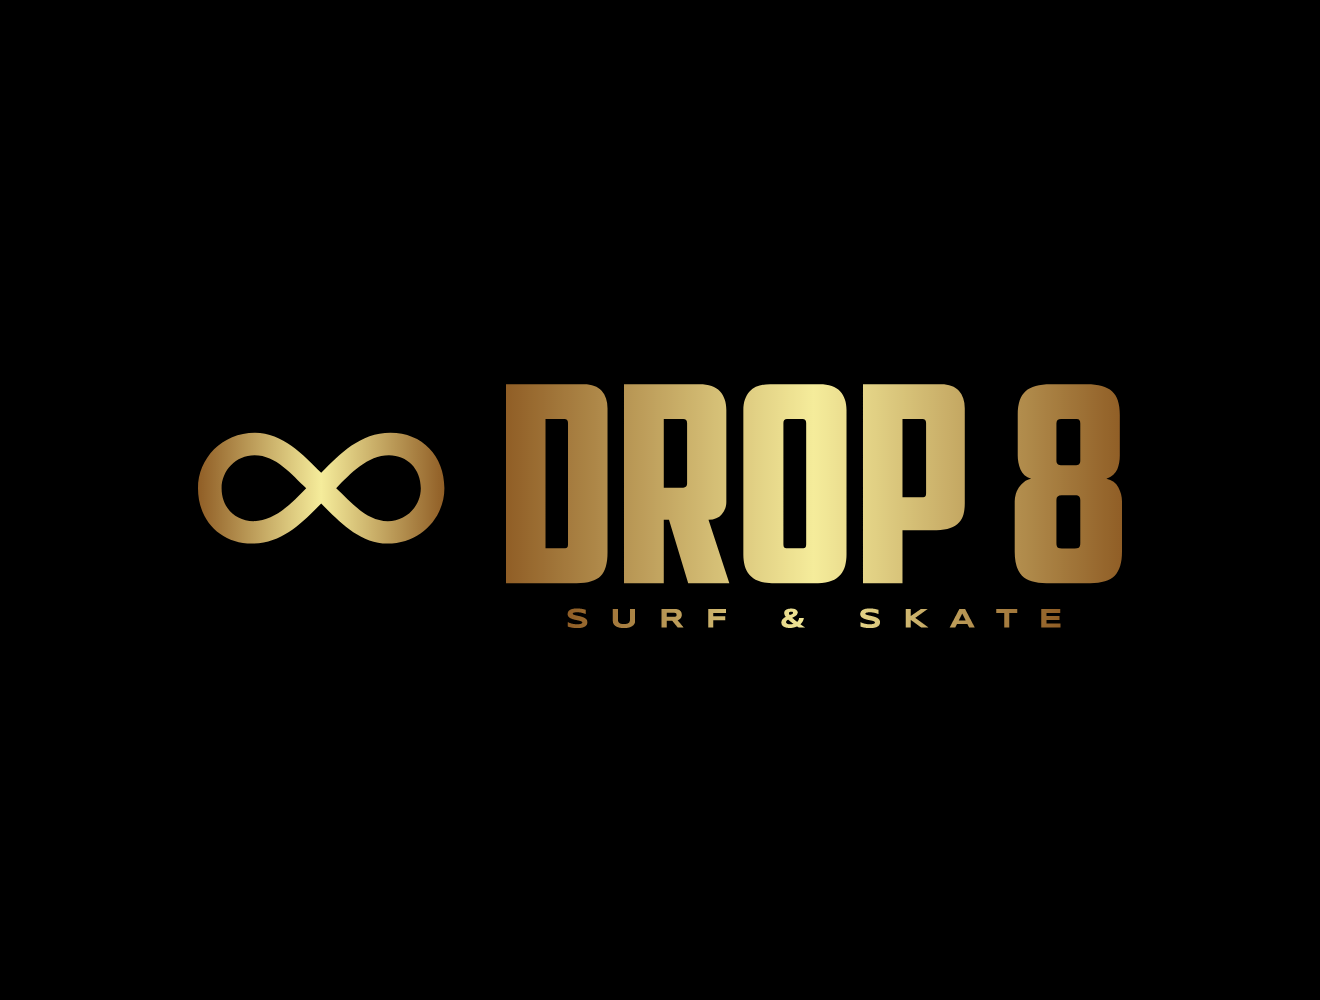 Drop 8 Surf & Skate